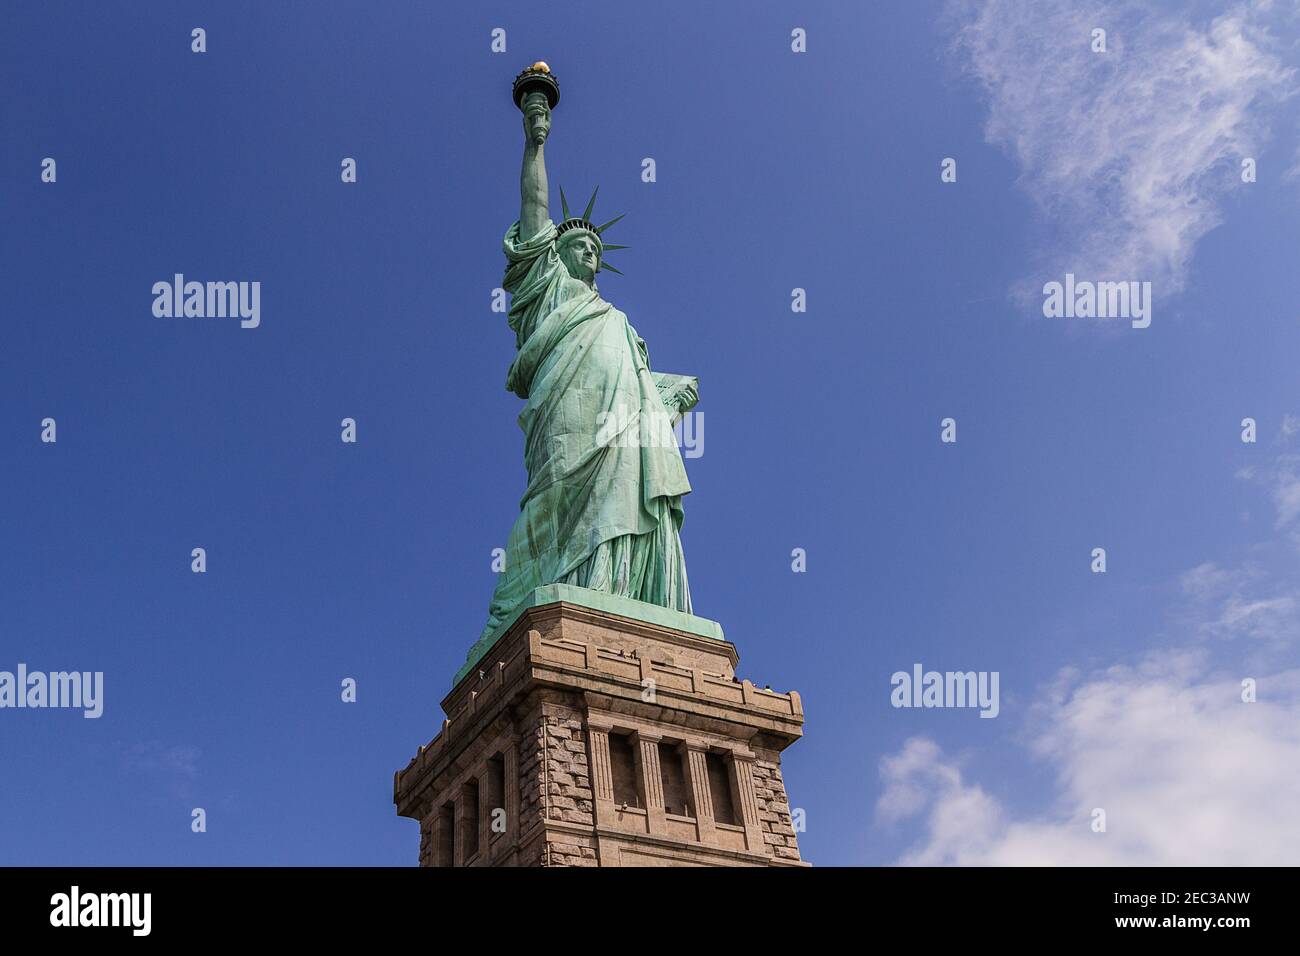 Una imagen de la Estatua de la Libertad tomada desde abajo Foto de stock